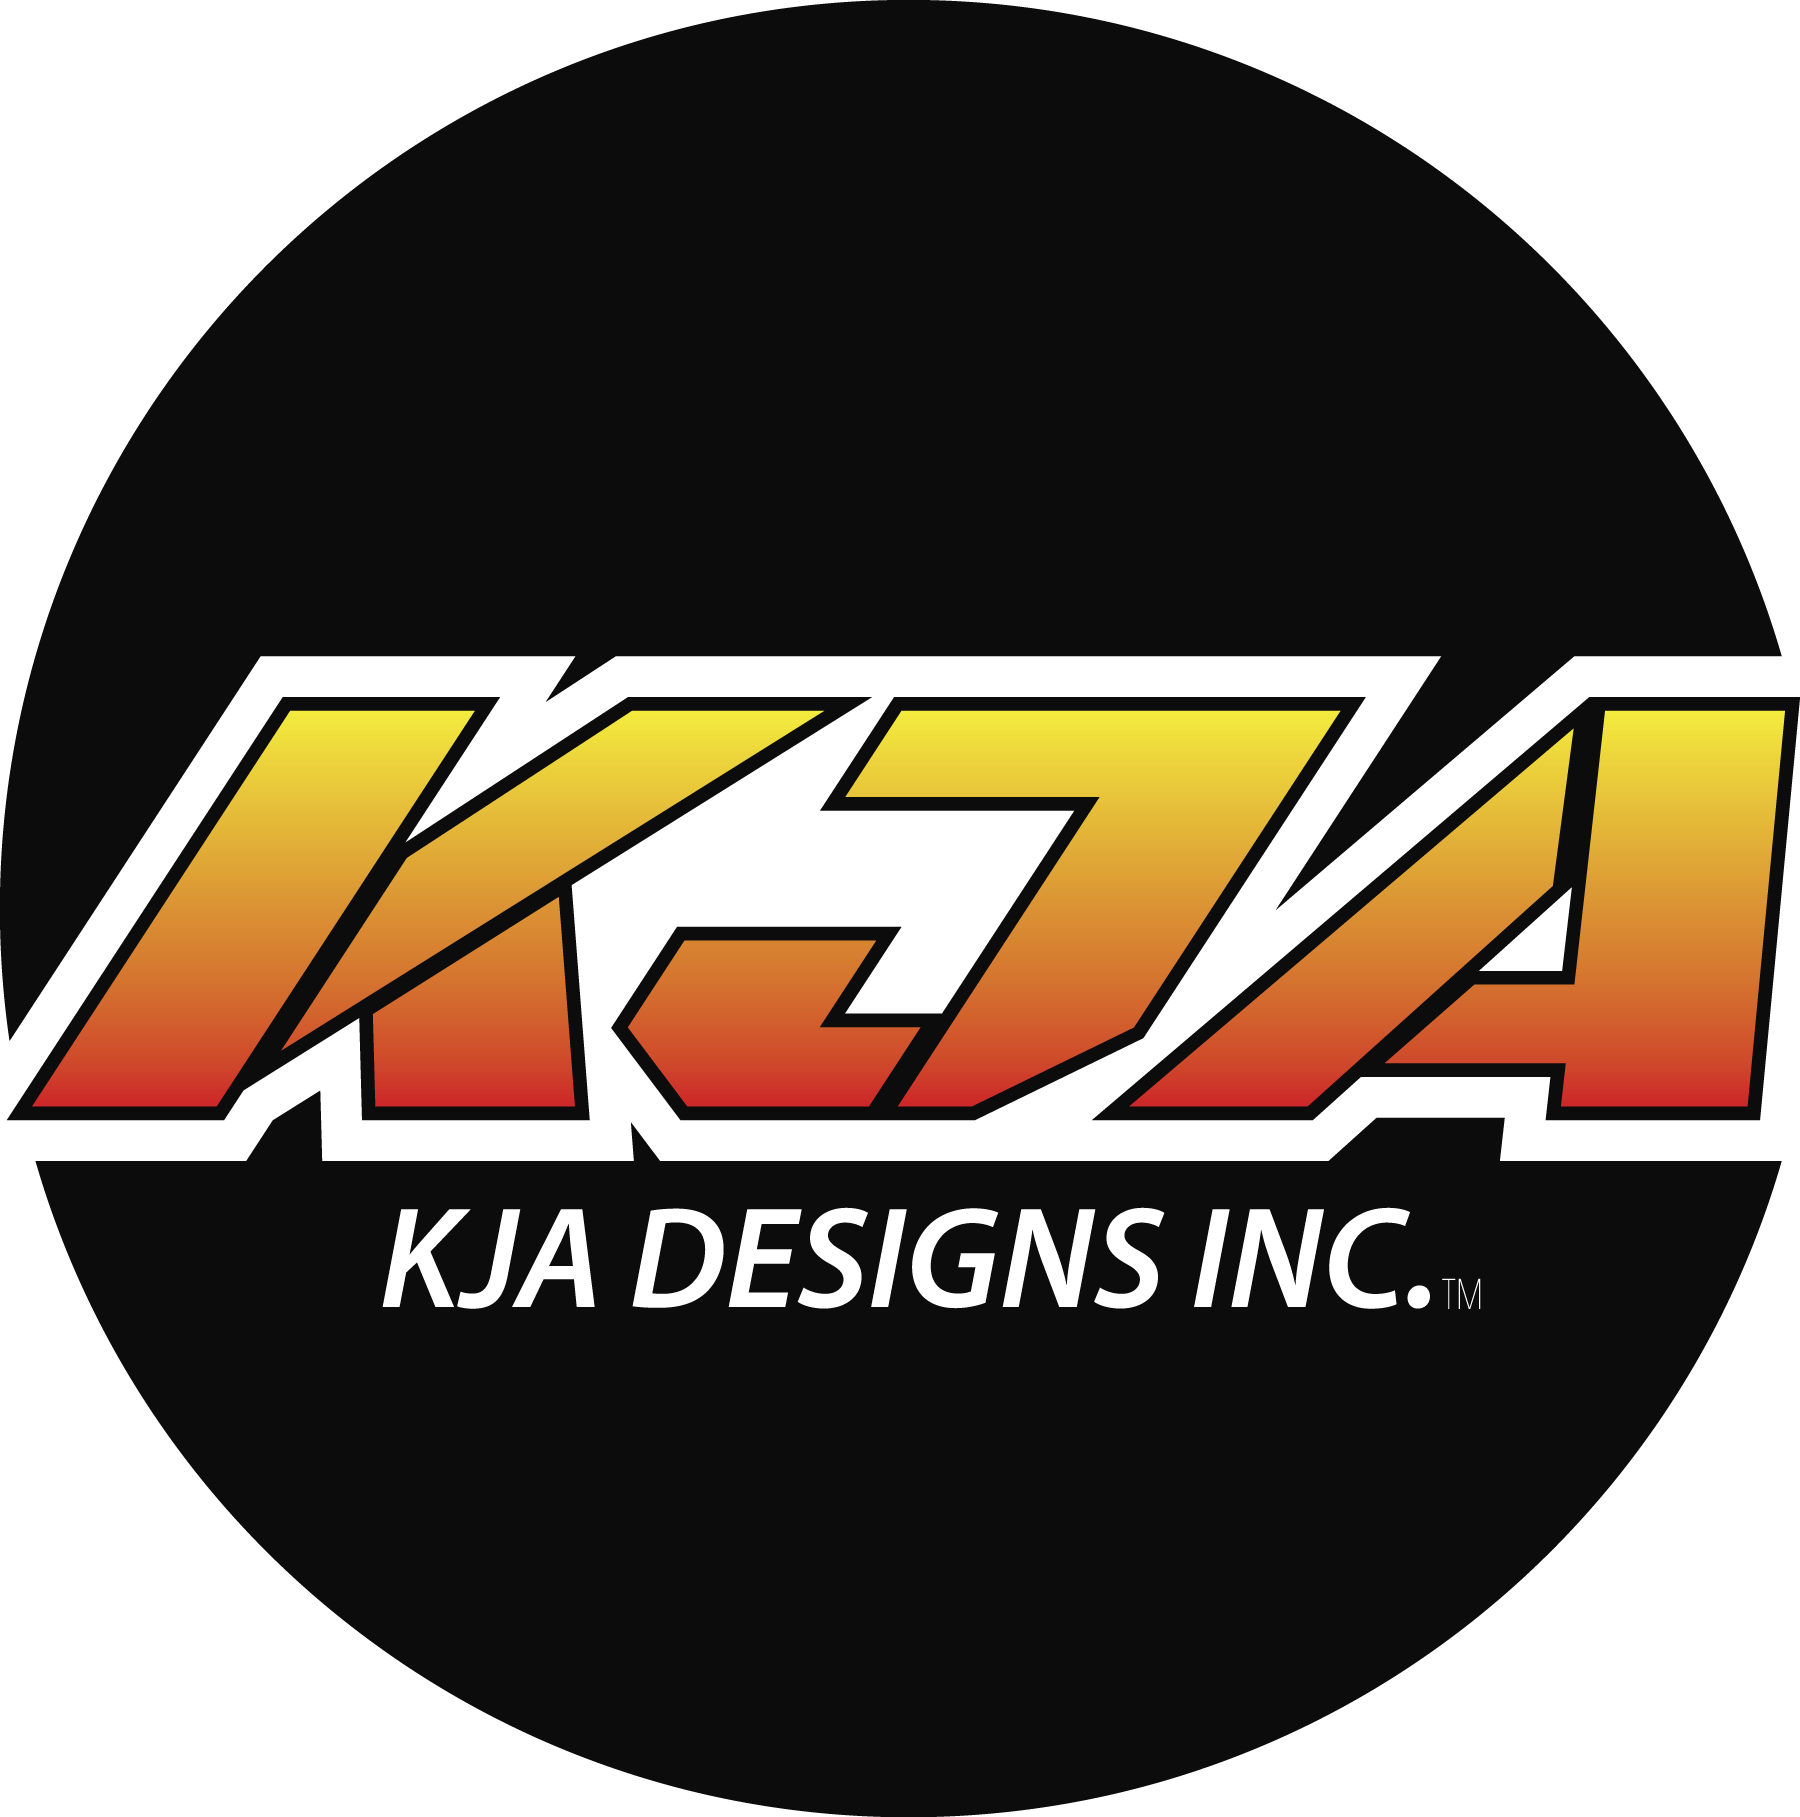 KJA Designs Inc.™ 1A